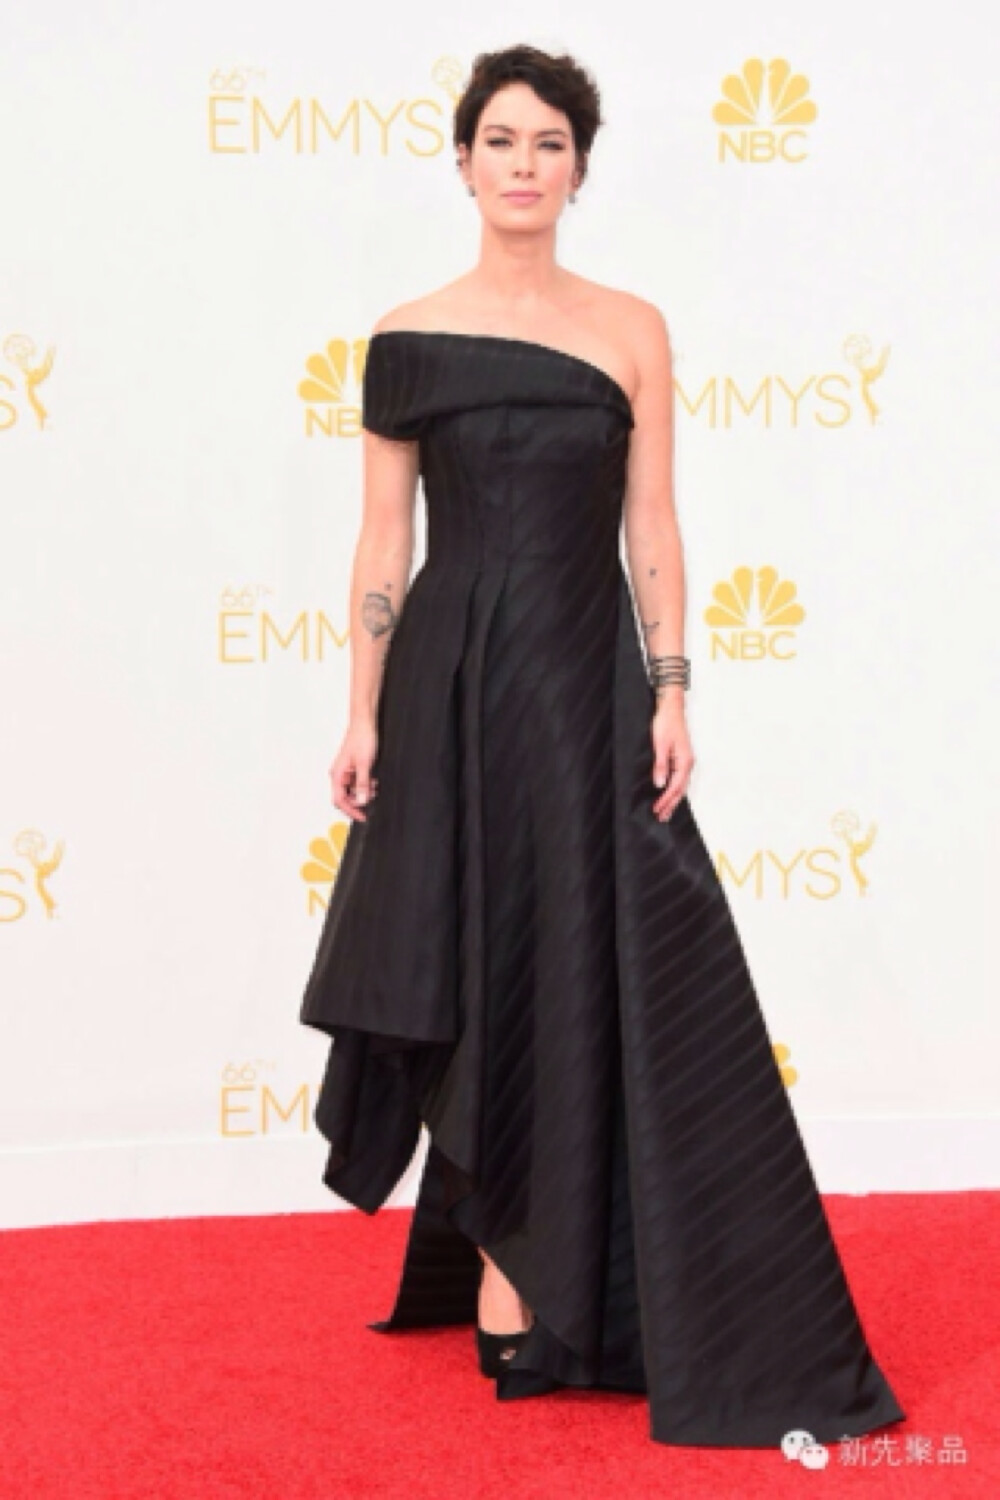 盘点艾美奖典礼上的明星服装秀（35）——《权利的游戏》 Lena Headey选择了高冷Rubin Singer黑色礼服。